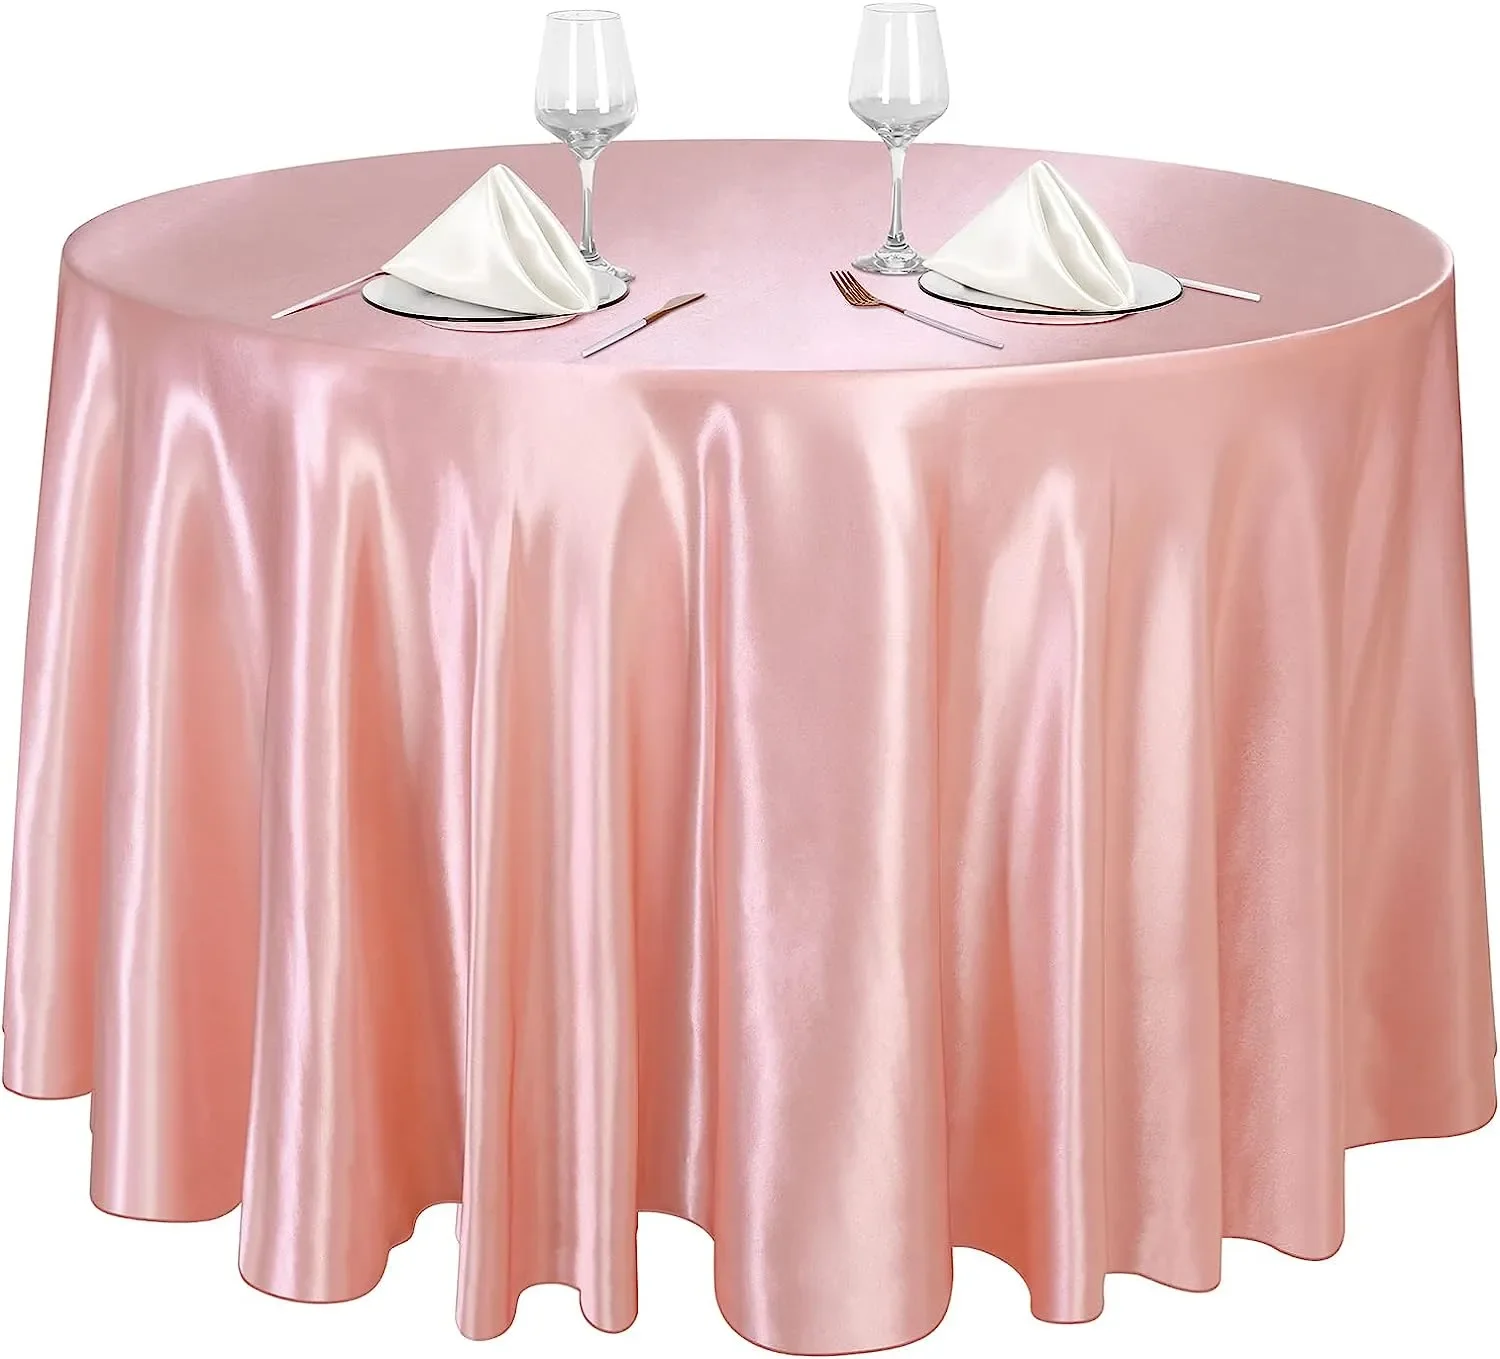 

Блестящий шелковый чехол из розового золота для свадебного банкета, однотонное украшение для стола на свадьбу, день рождения